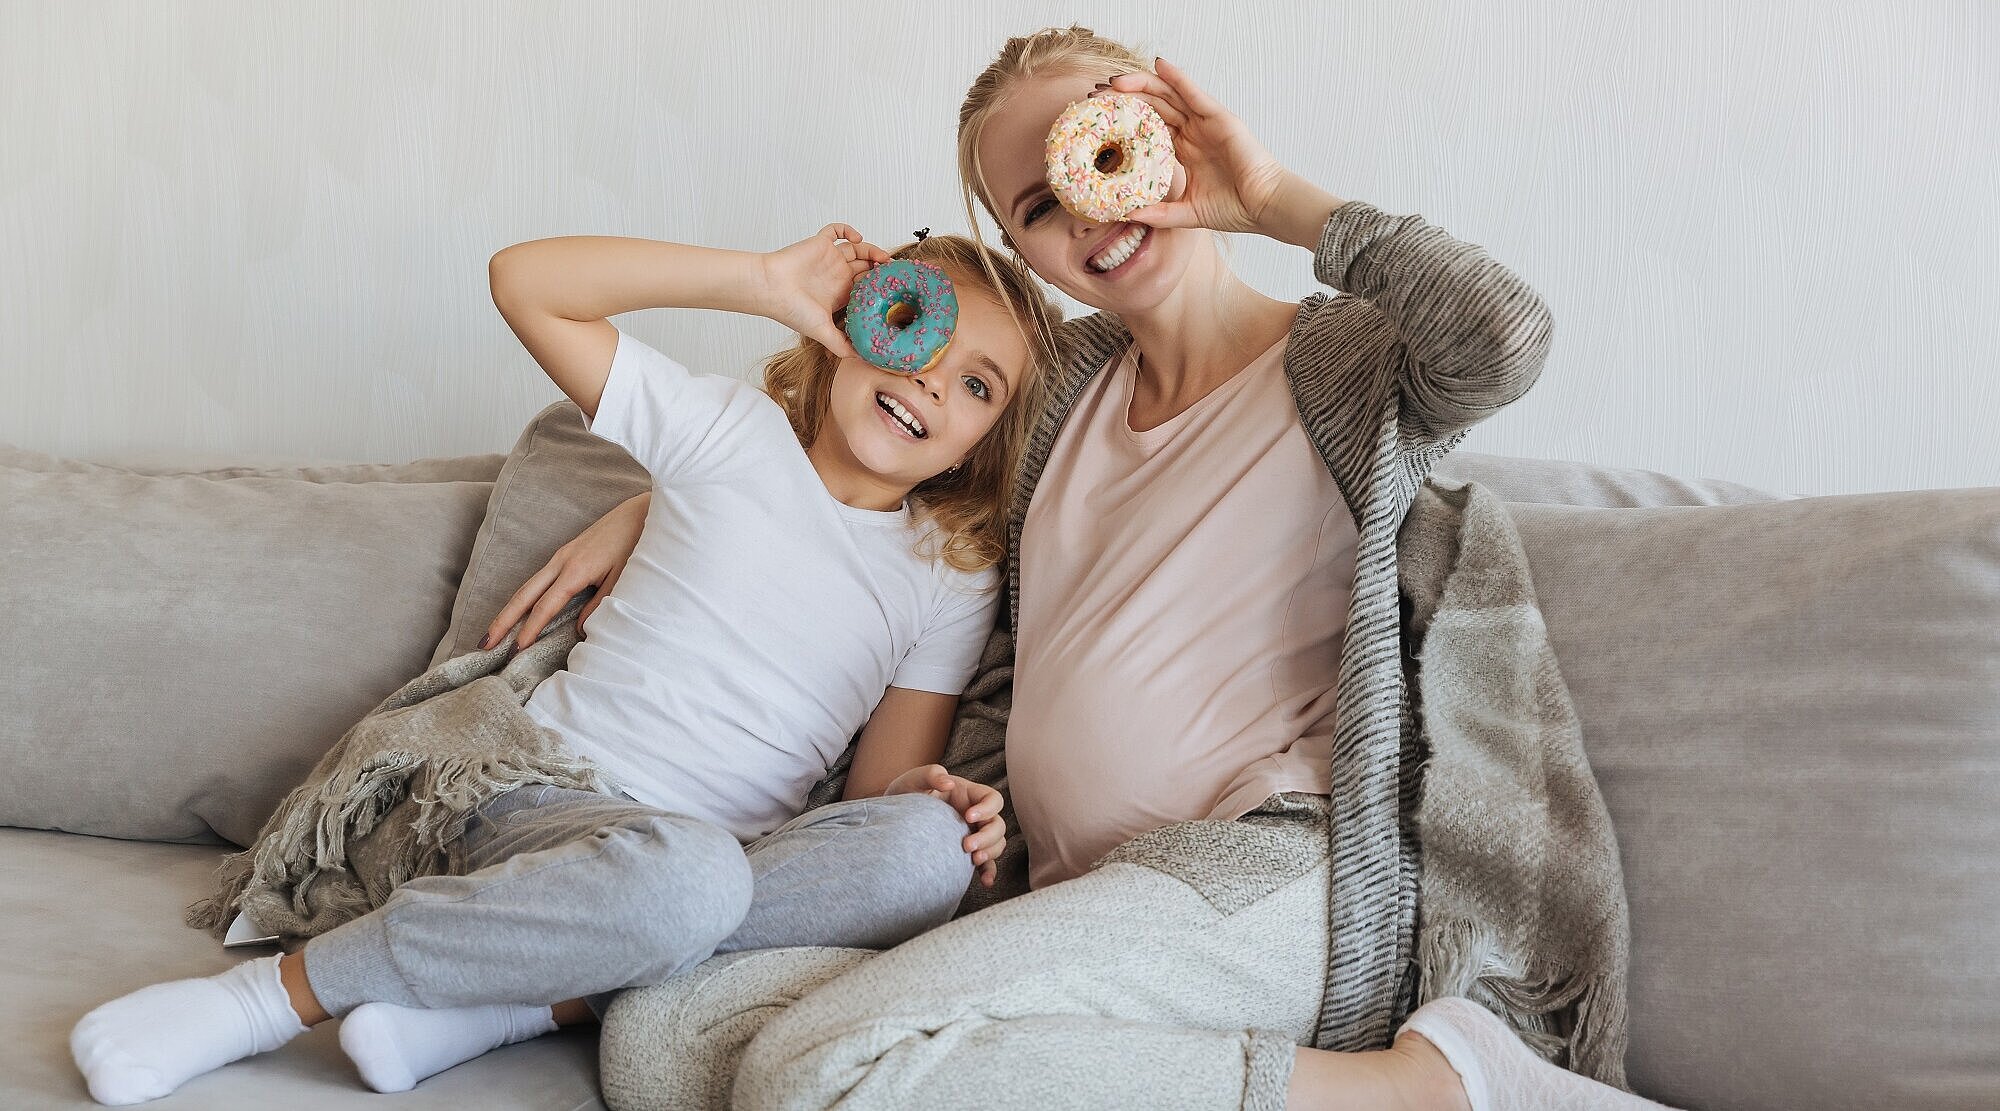 Foto: Mutter und Tochter sitzen auf einem Sofa und schauen mit einem Auge durch einen Donut